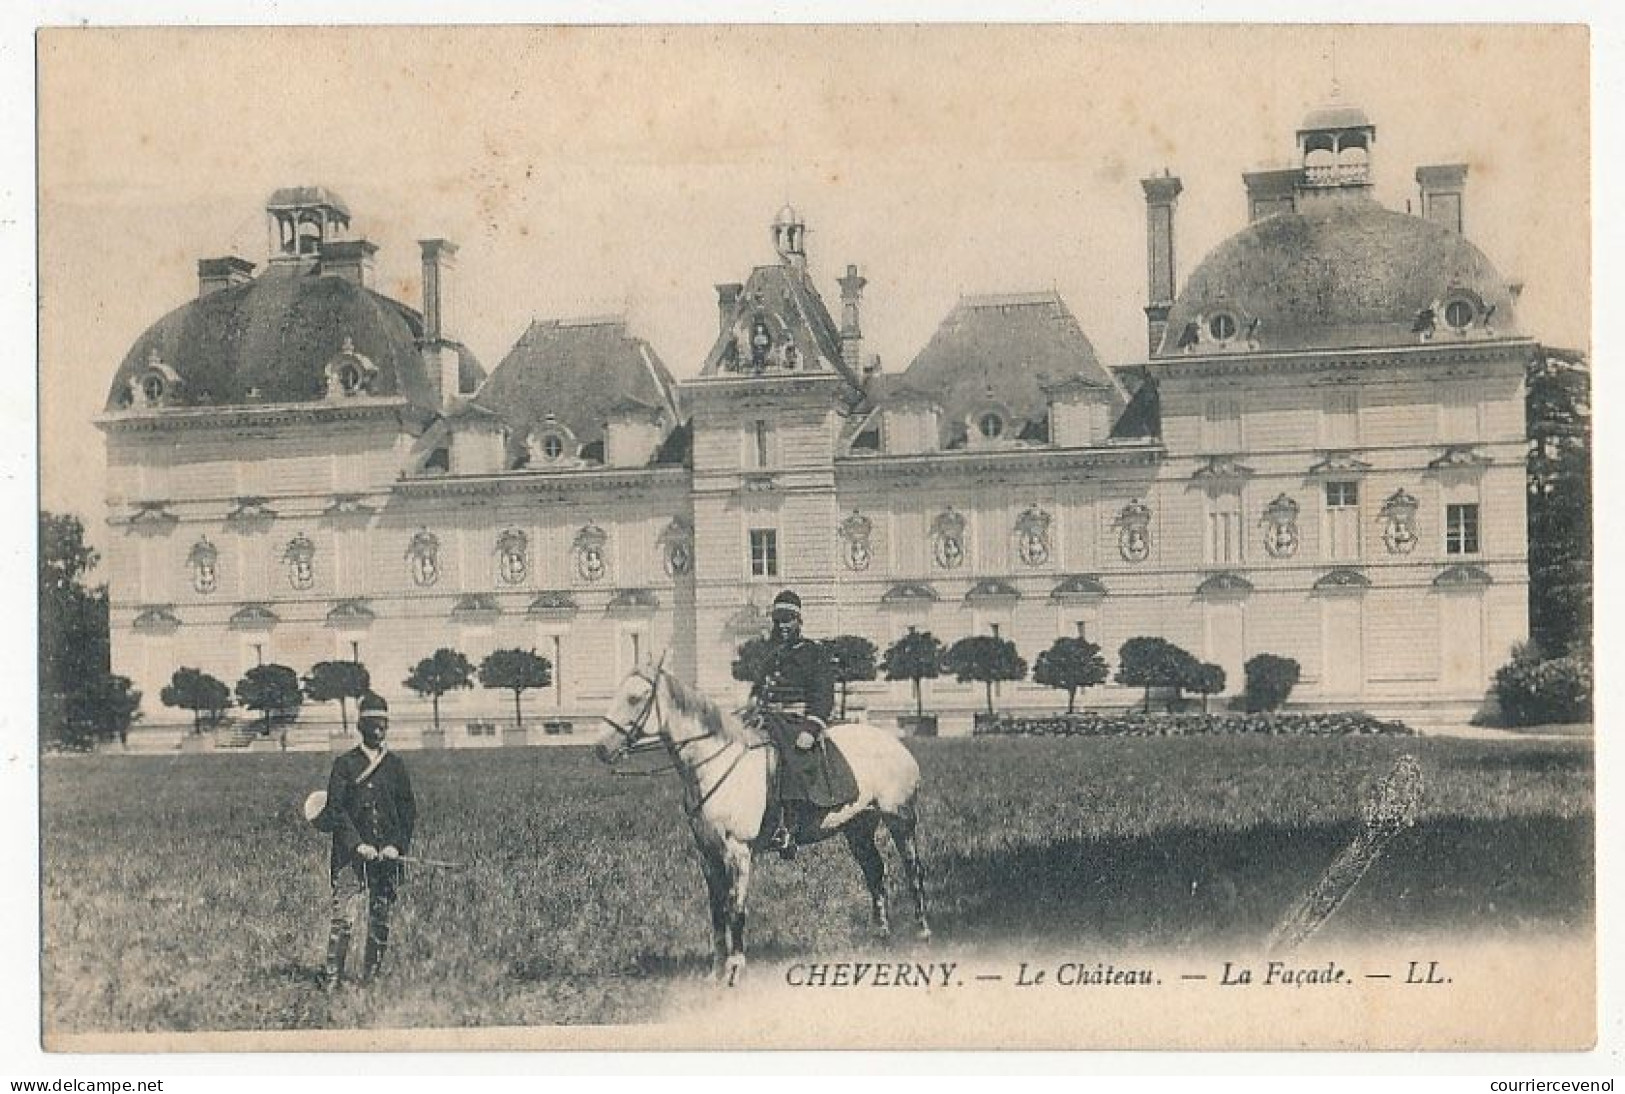 6 CPA - CHEVERNY (Loir et Cher) - Le Château - Facade, Facade Nord, Dépendances, dont Avis de Passage Chic Parisien